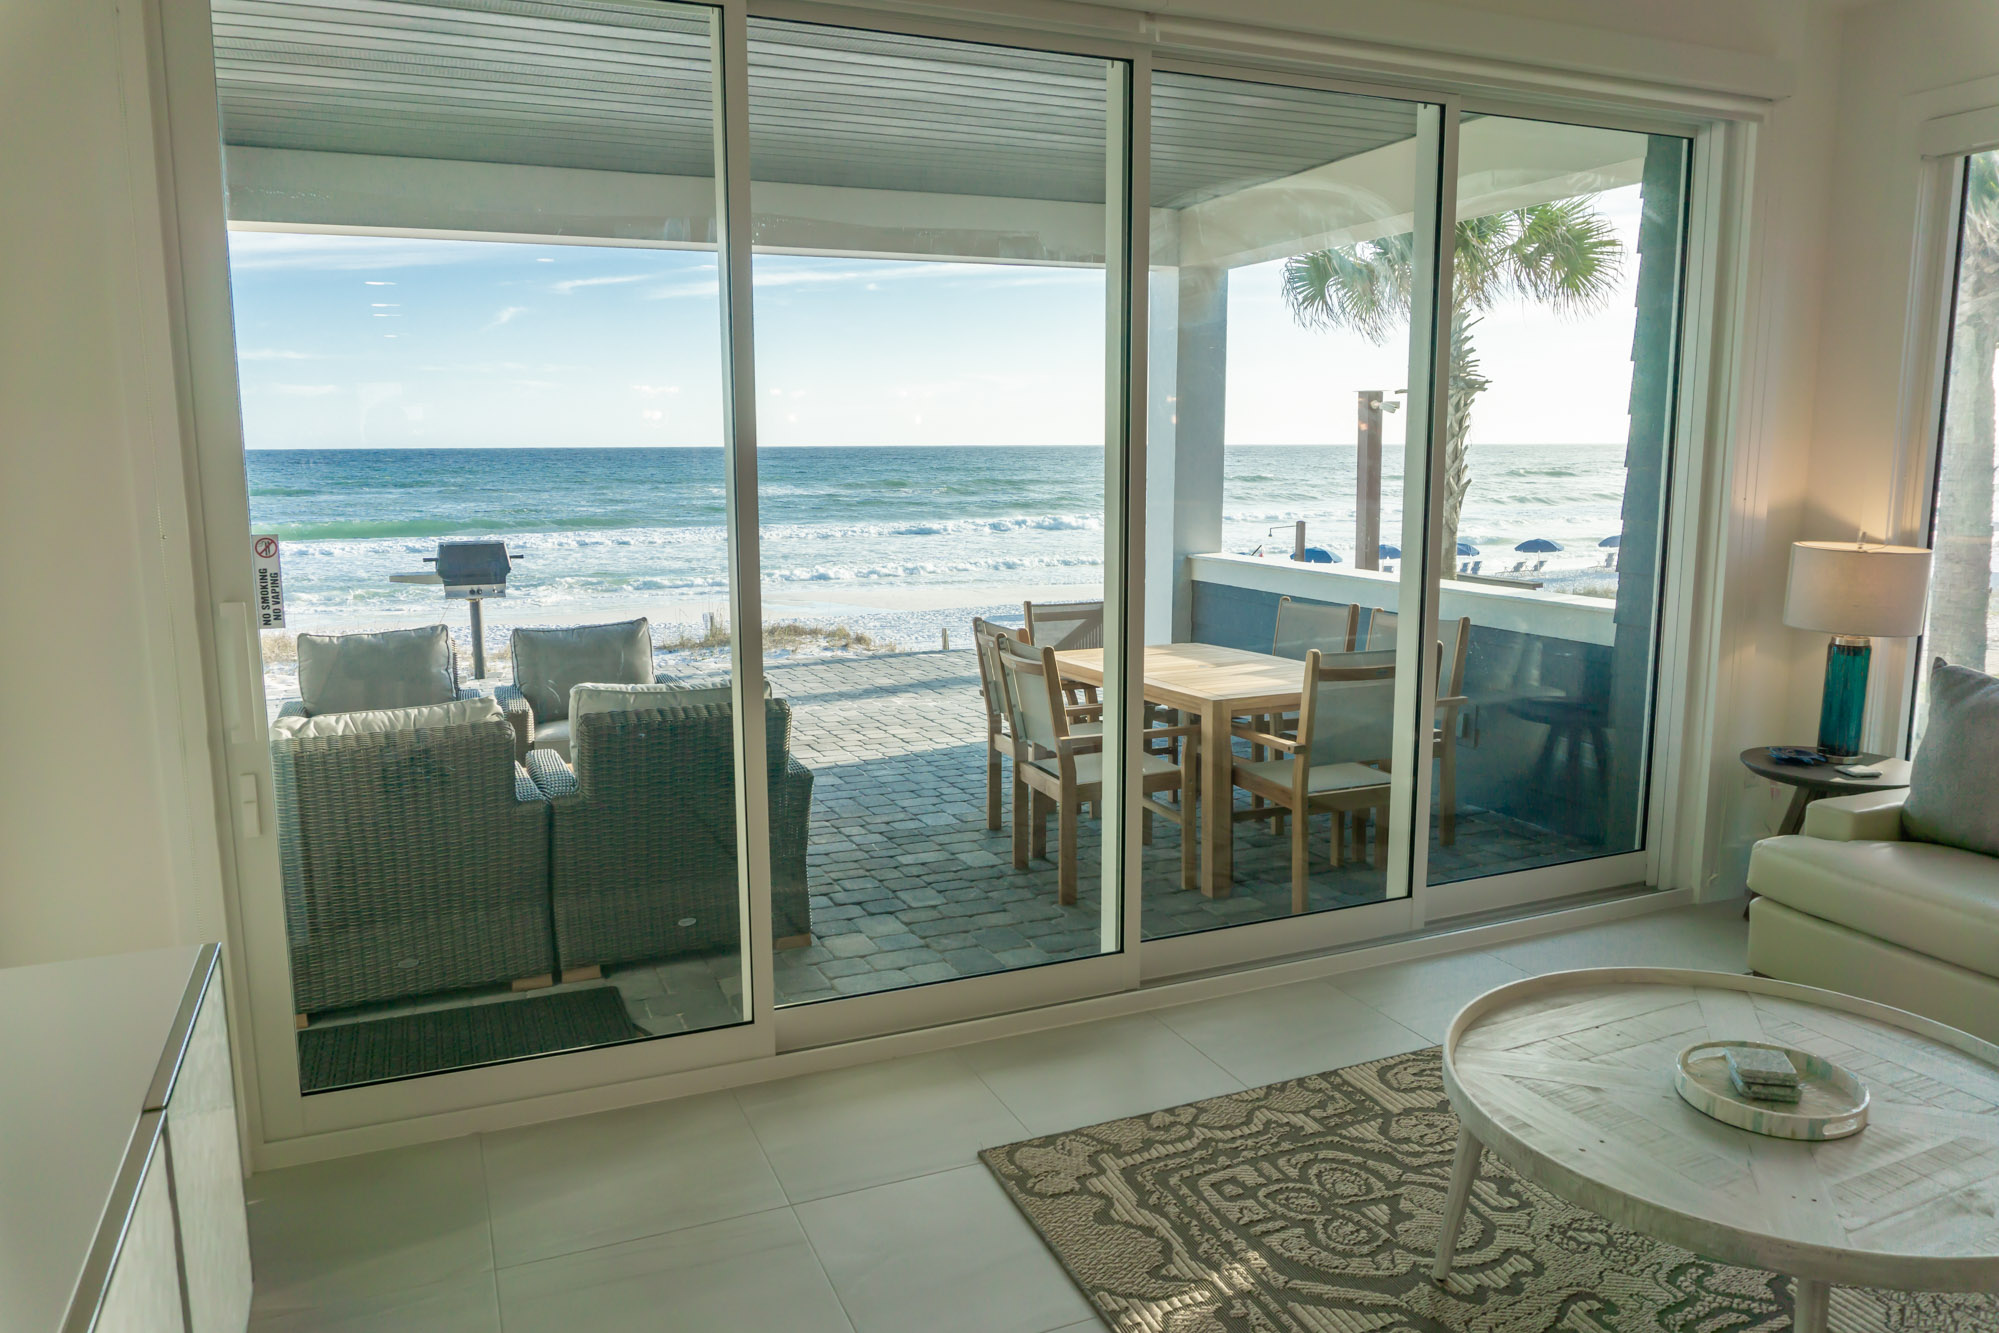 Crystal Clear (Henderson Beach Villas #1) Condo rental in Henderson Beach Villas in Destin Florida - #14